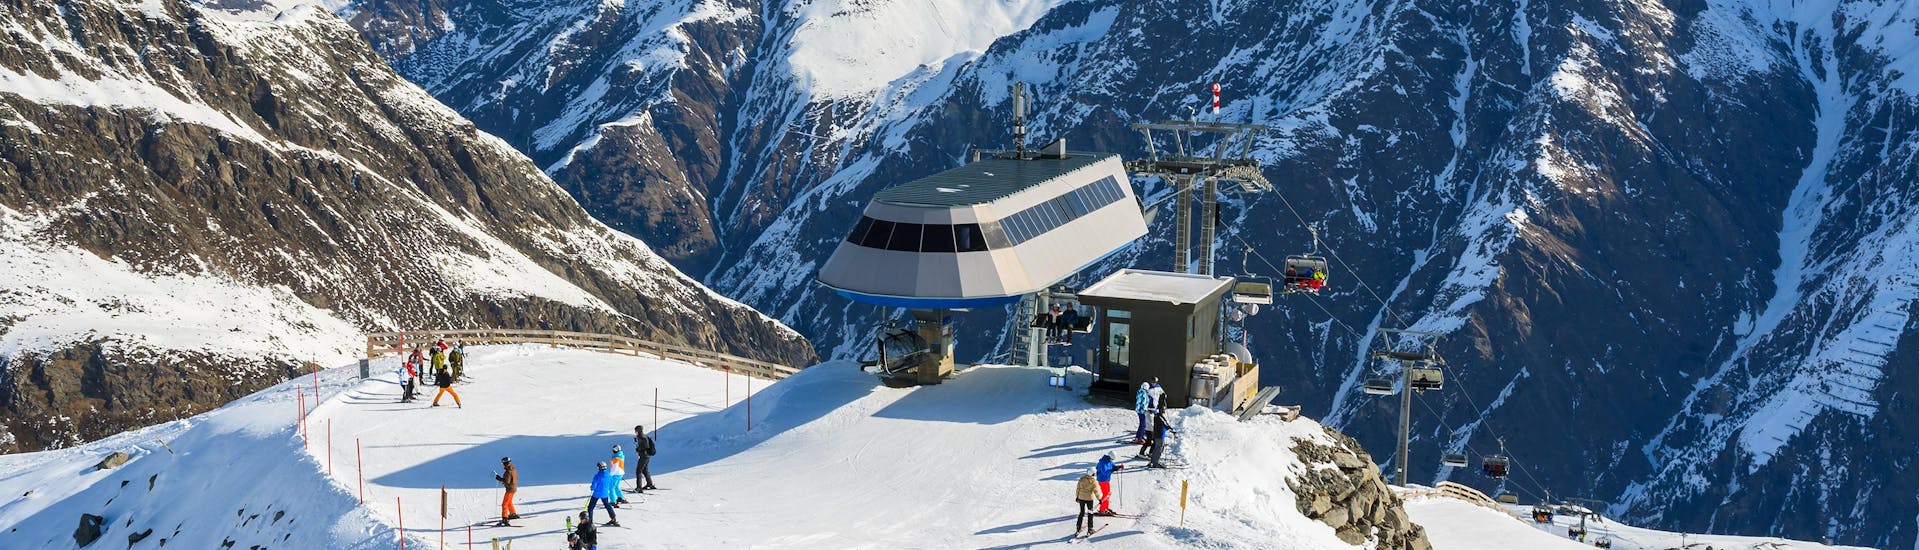 Ausblick auf die sonnige Berglandschaft beim Skifahren lernen mit den Skischulen am Pitztaler Gletscher.